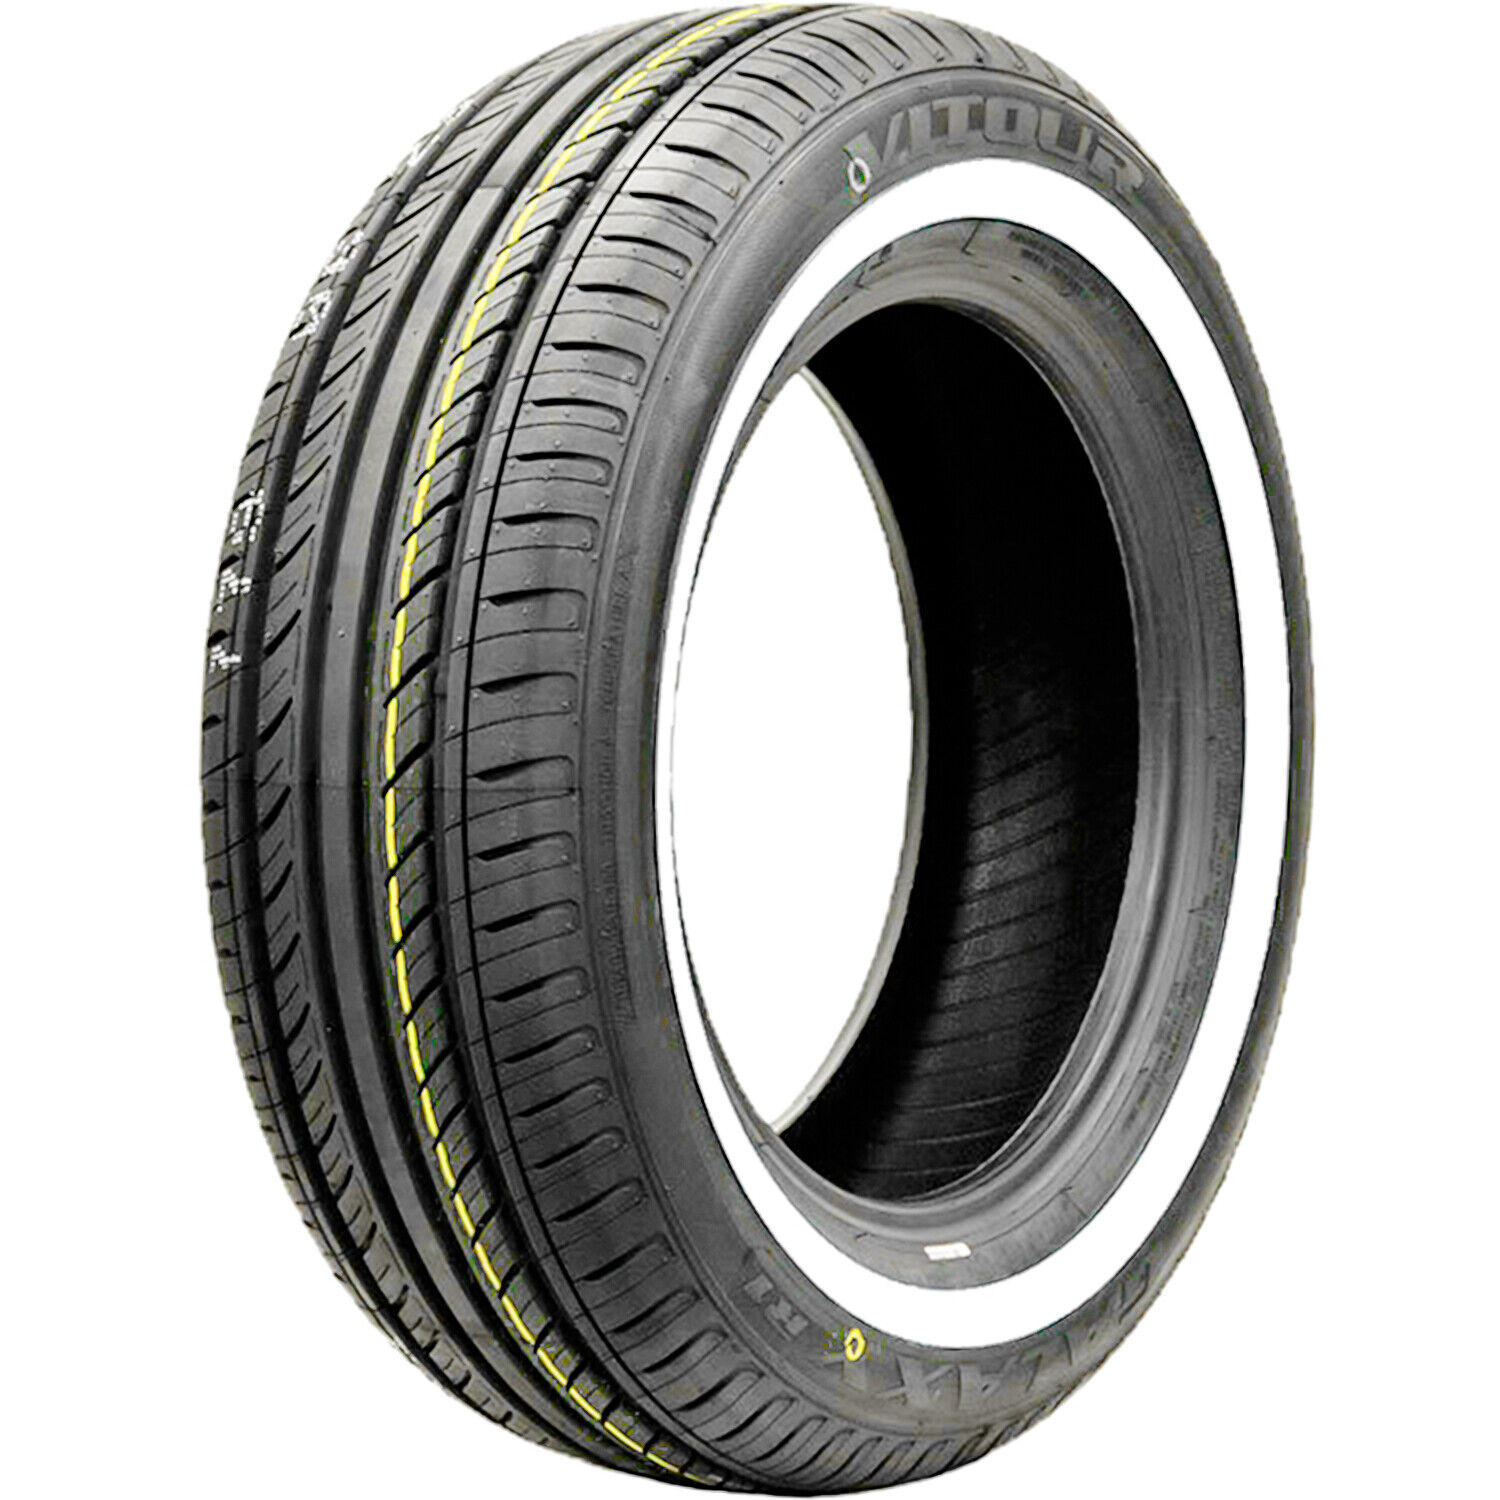 Tire 165R15 Vitour Galaxy R1 AS A/S Performance 86H